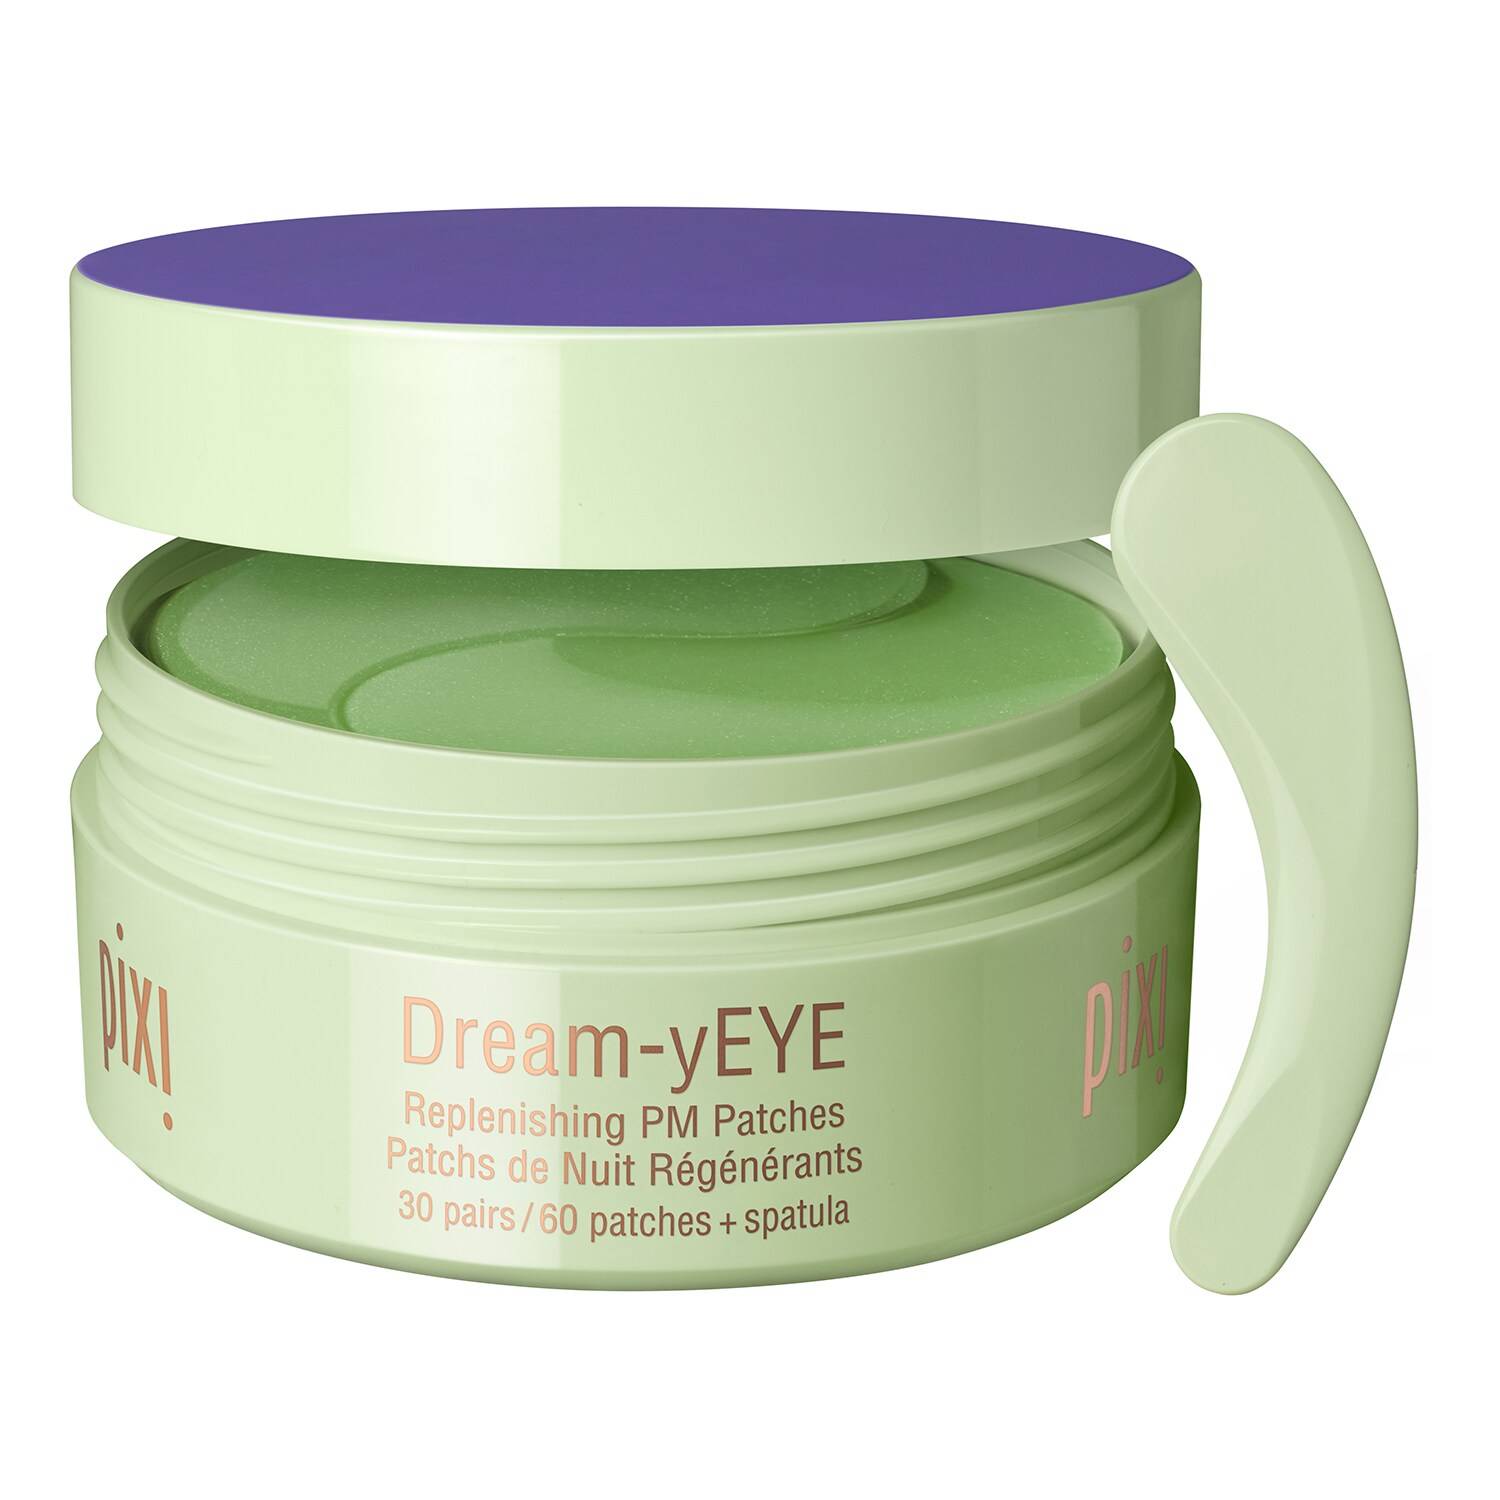 Pixi Dream-Yeye - Replenishing Pm Patches Eye Patches Dream-Yeye